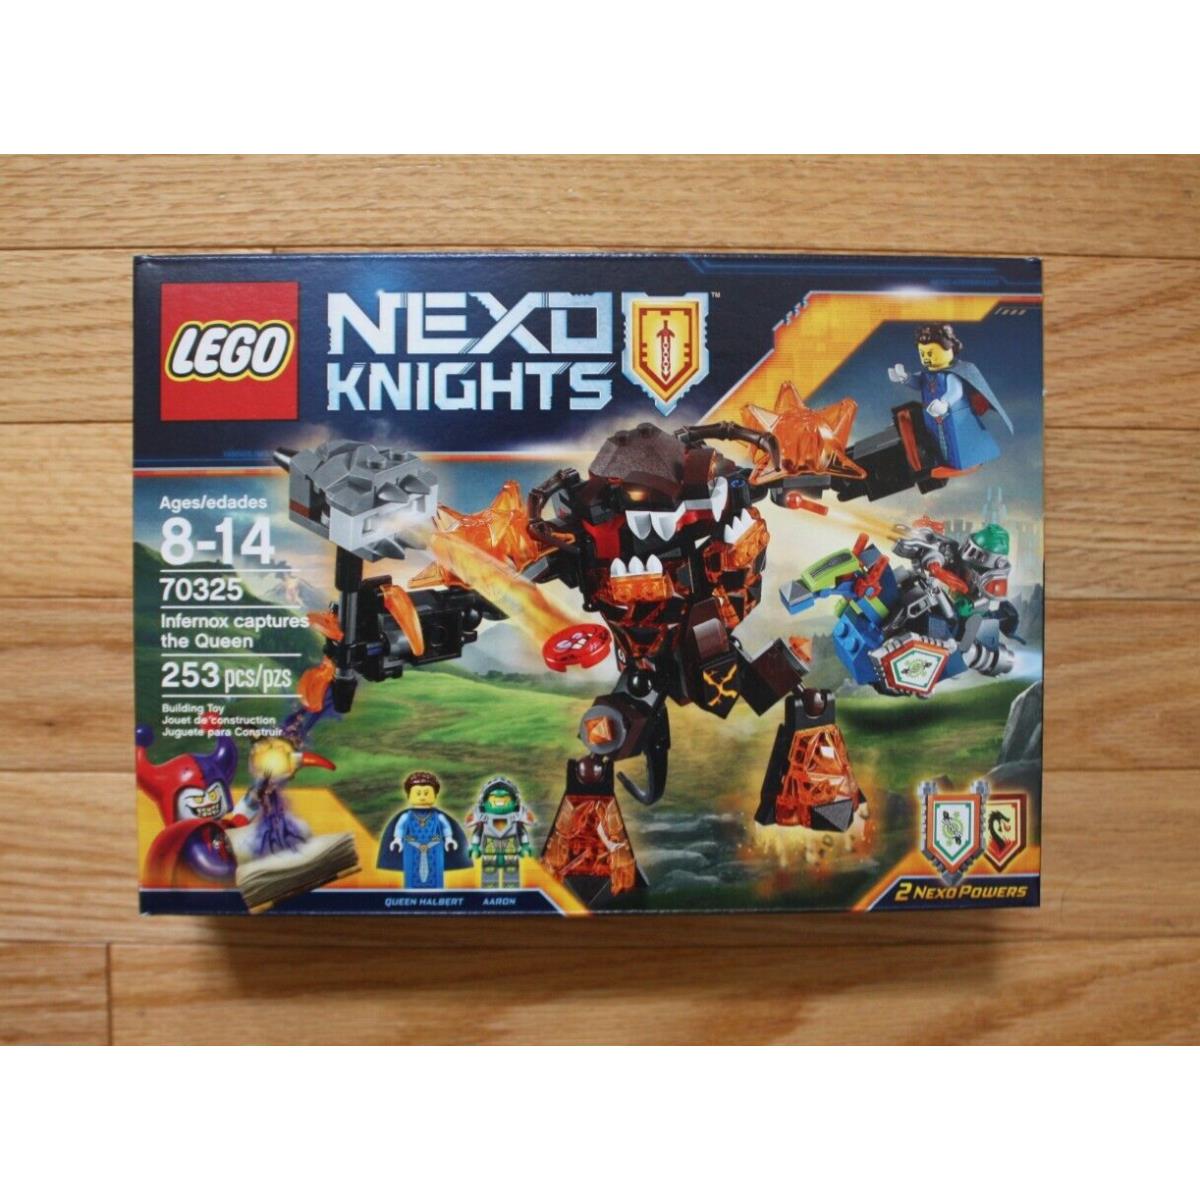 Lego Nexo Knights 70325 Infernox Captures The Queen